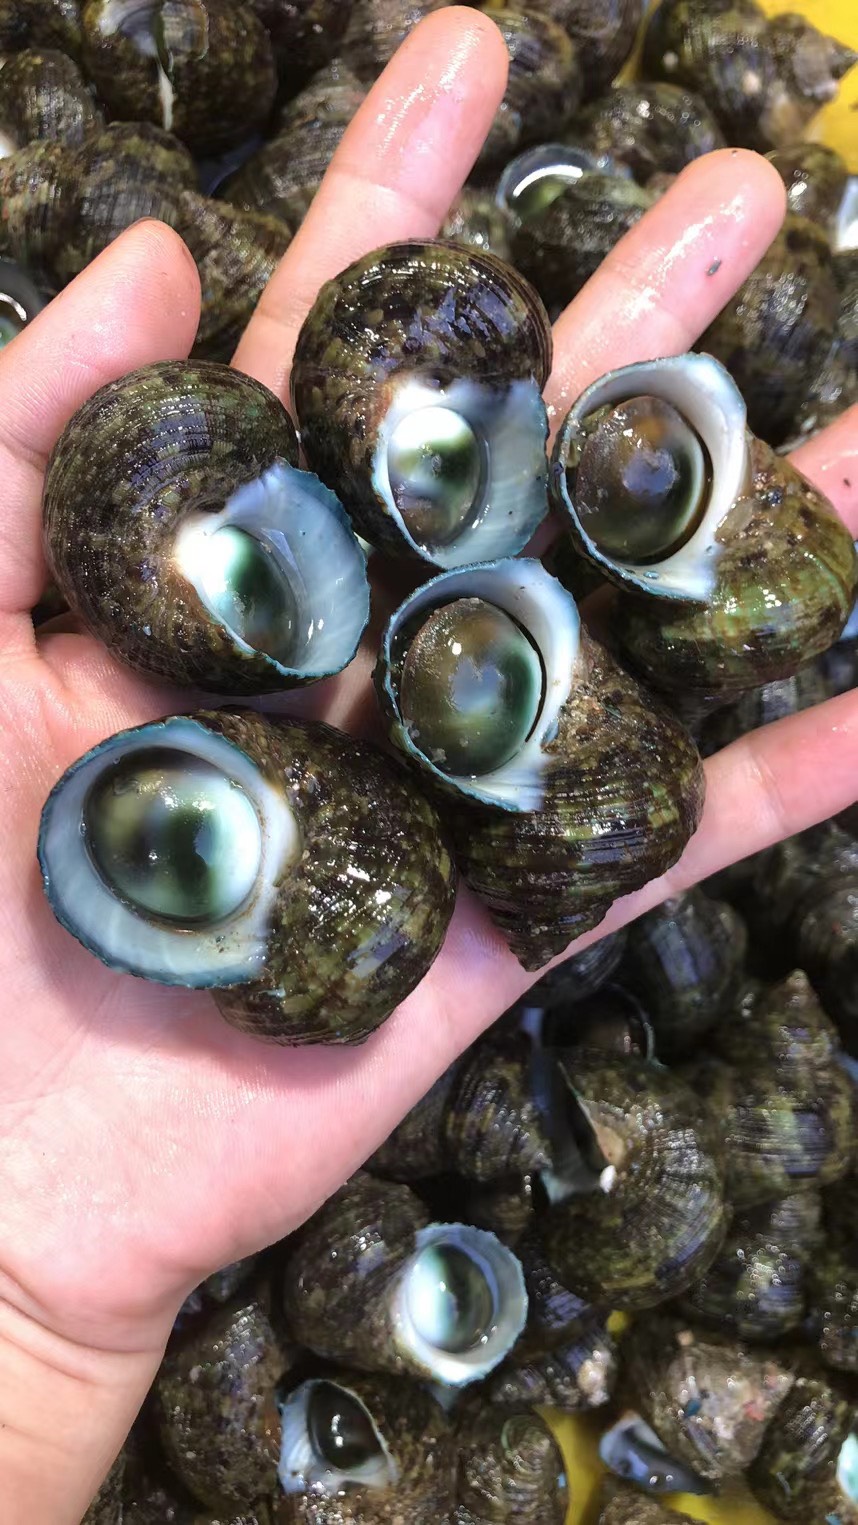 食品工艺 鲜活水产 品种名 牛眼螺 是否带壳 带壳